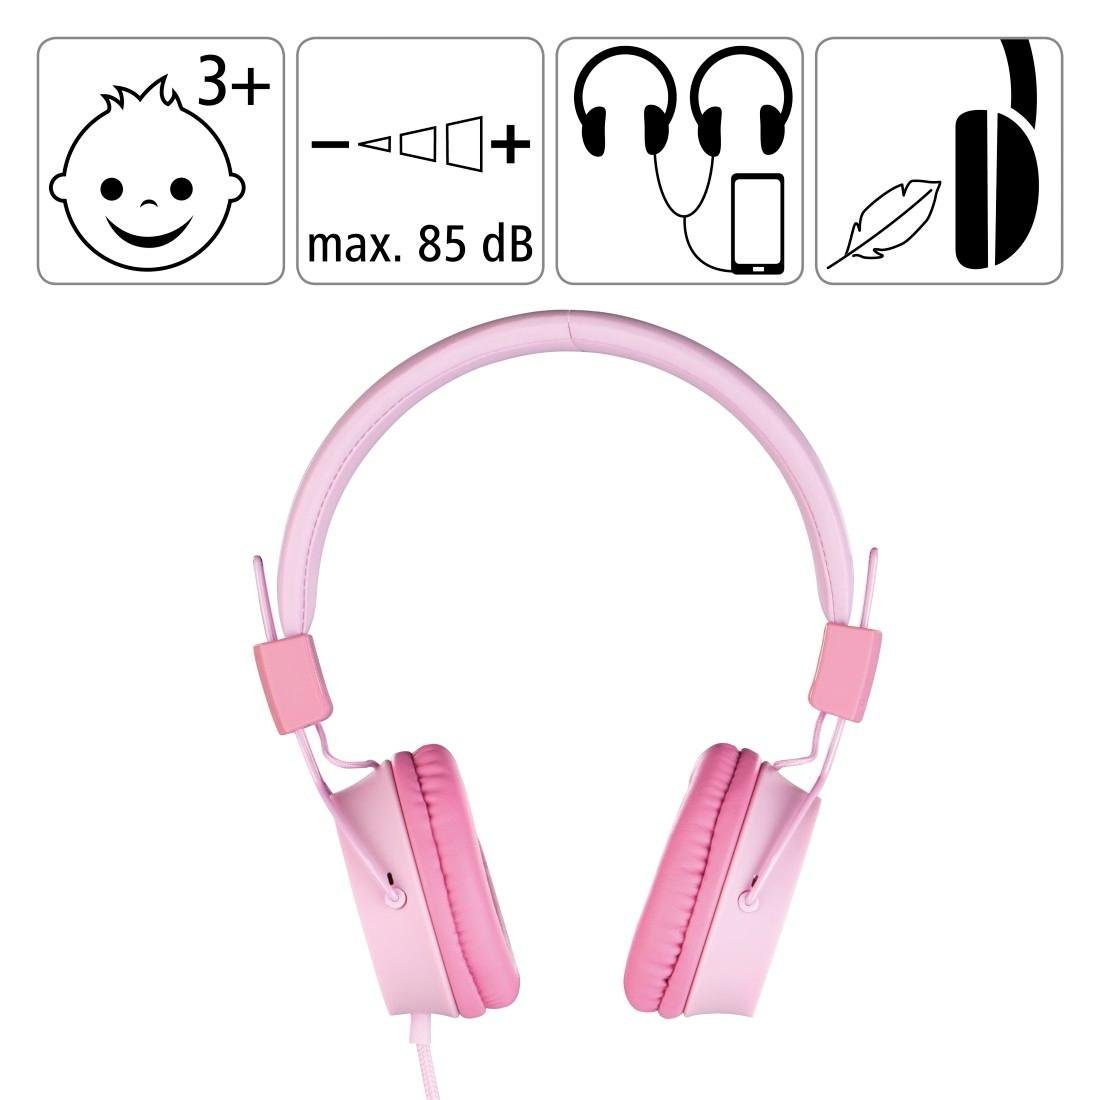 Kabel auf leicht zusammenfaltbar, mit pink Lautstärkebegrenzung möglich) Kinderkopfhörer weiterer On-Ear-Kopfhörer Thomson (größenverstellbar Kopfhöreranschluss 85dB On-Ear,